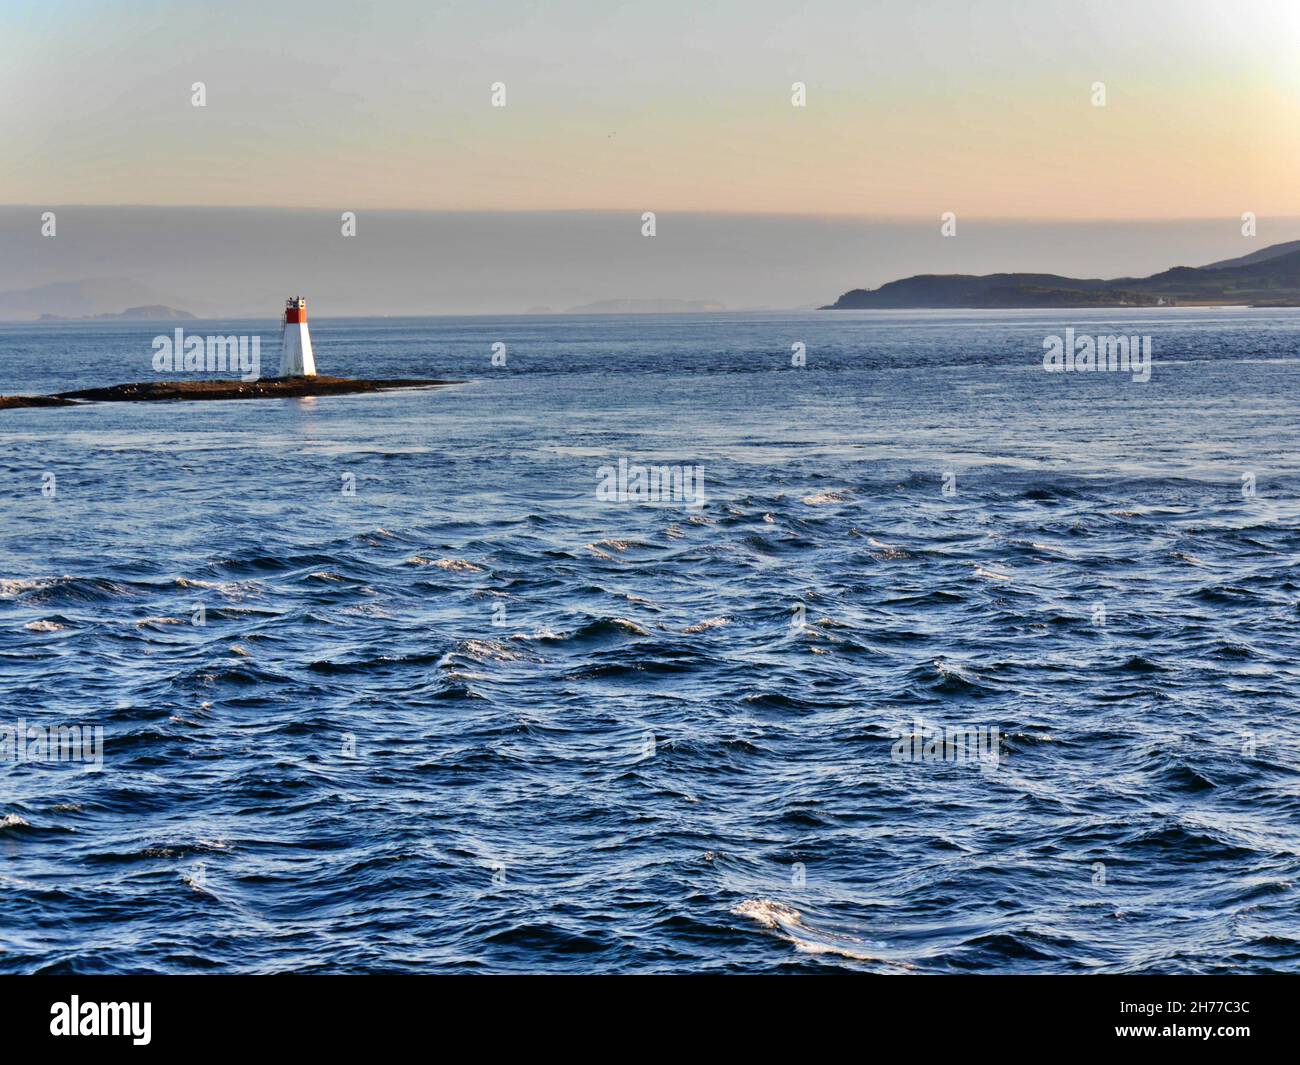 Faro in lontananza, Isola di Mull, Scozia. Foto di alta qualità Foto Stock